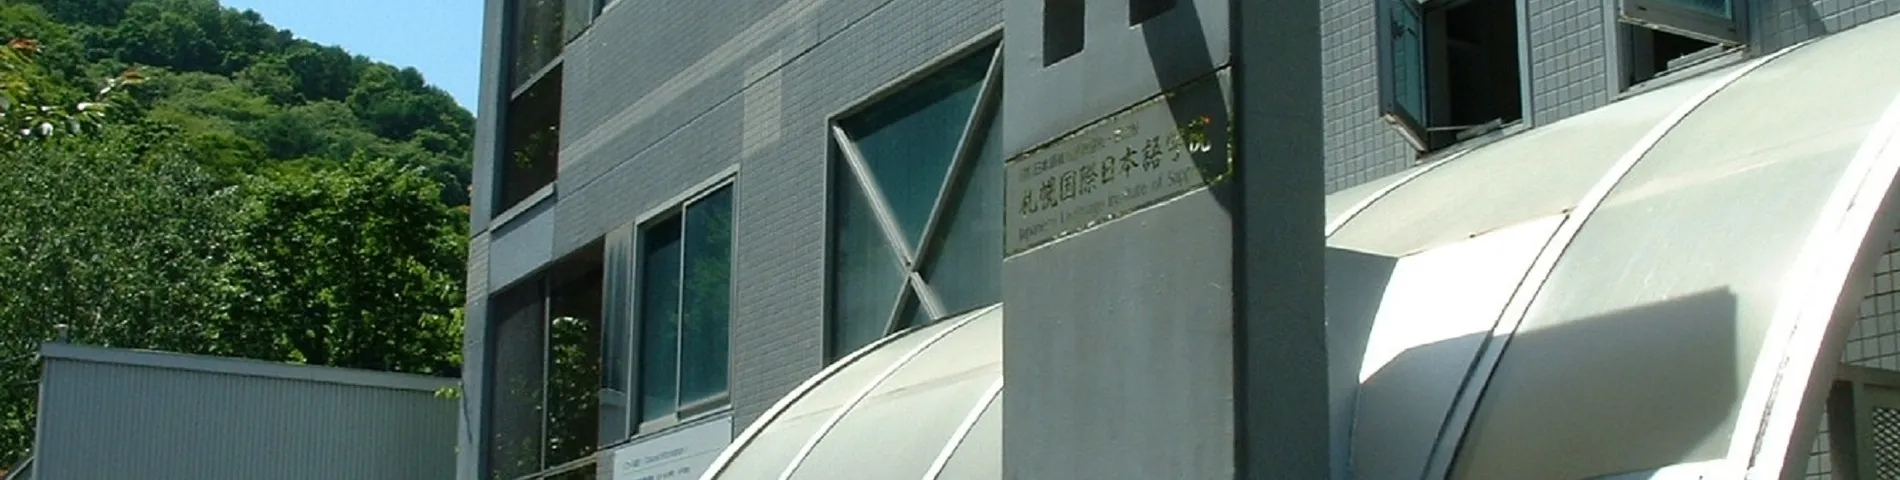 Japanese Language Institute of Sapporo foto 1